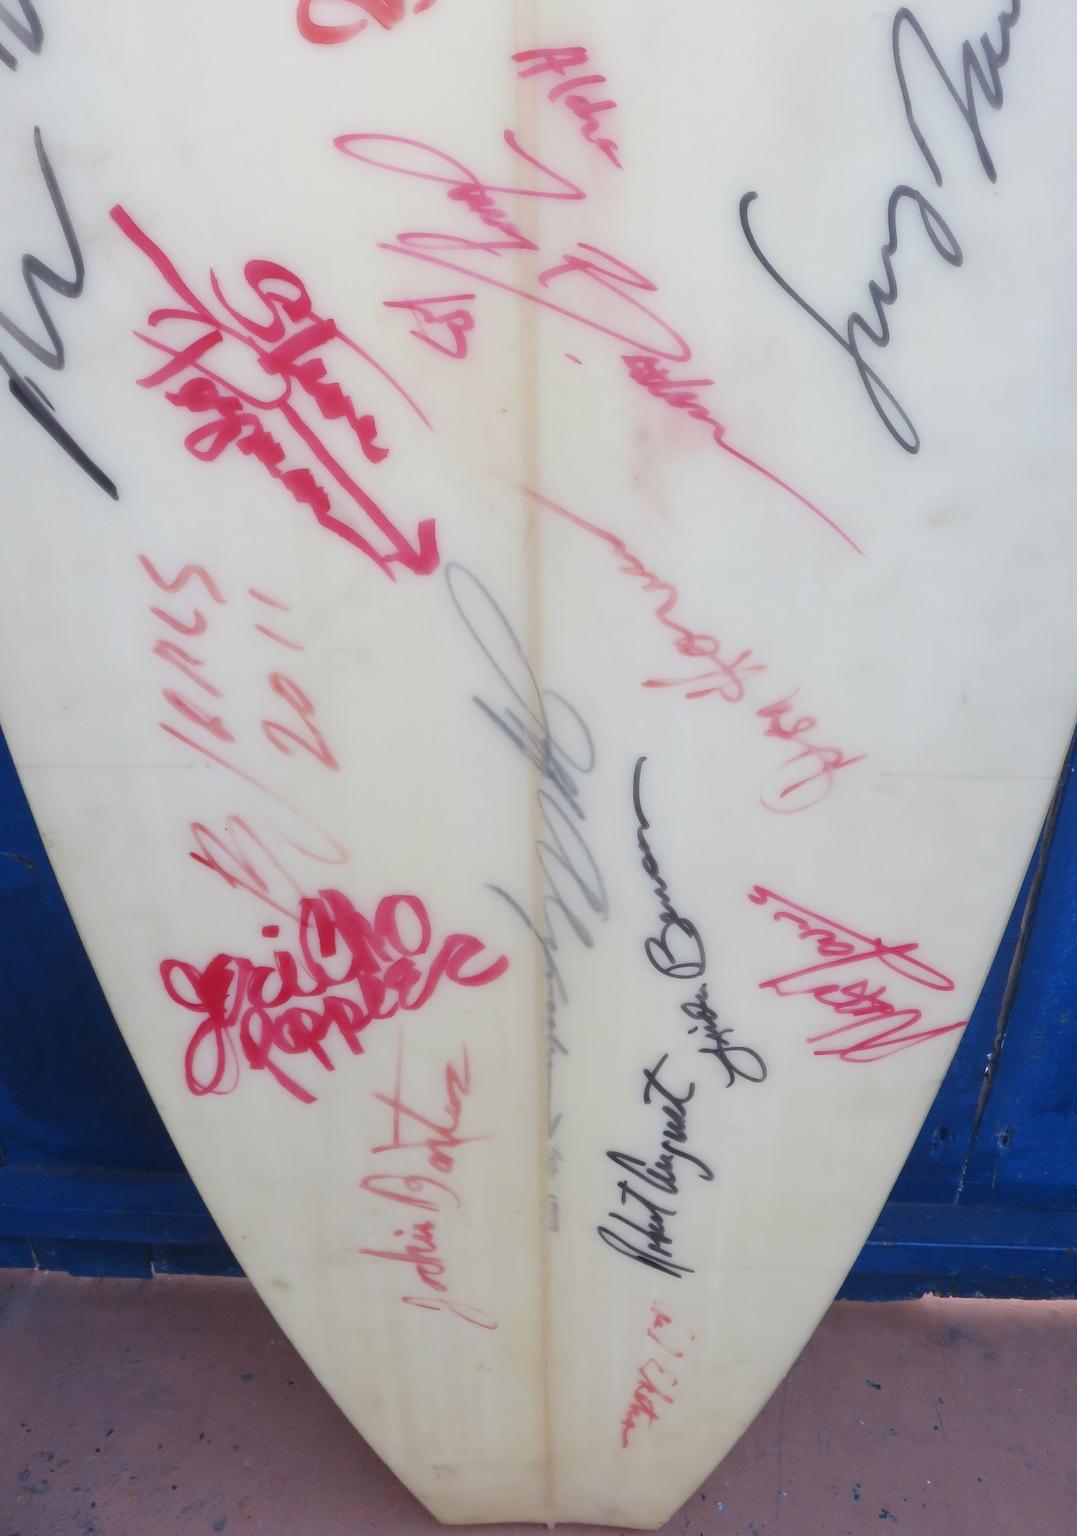 American Final Clark Foam Surfboard Blank Signed by Surfing Legends For Sale